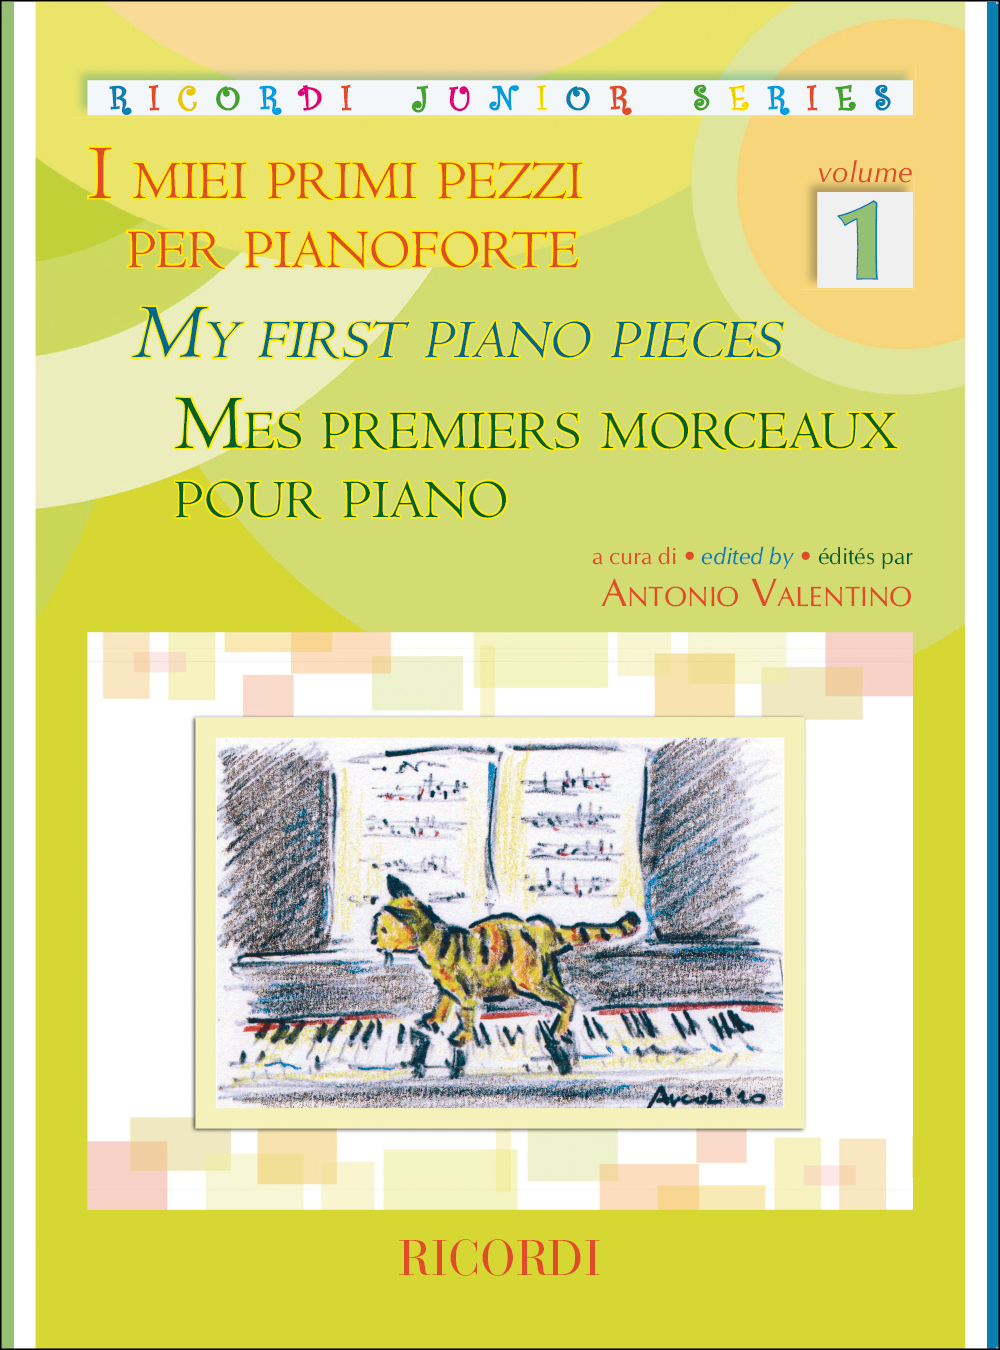 I Miei Primi Pezzi per pianoforte Volume 1: Piano